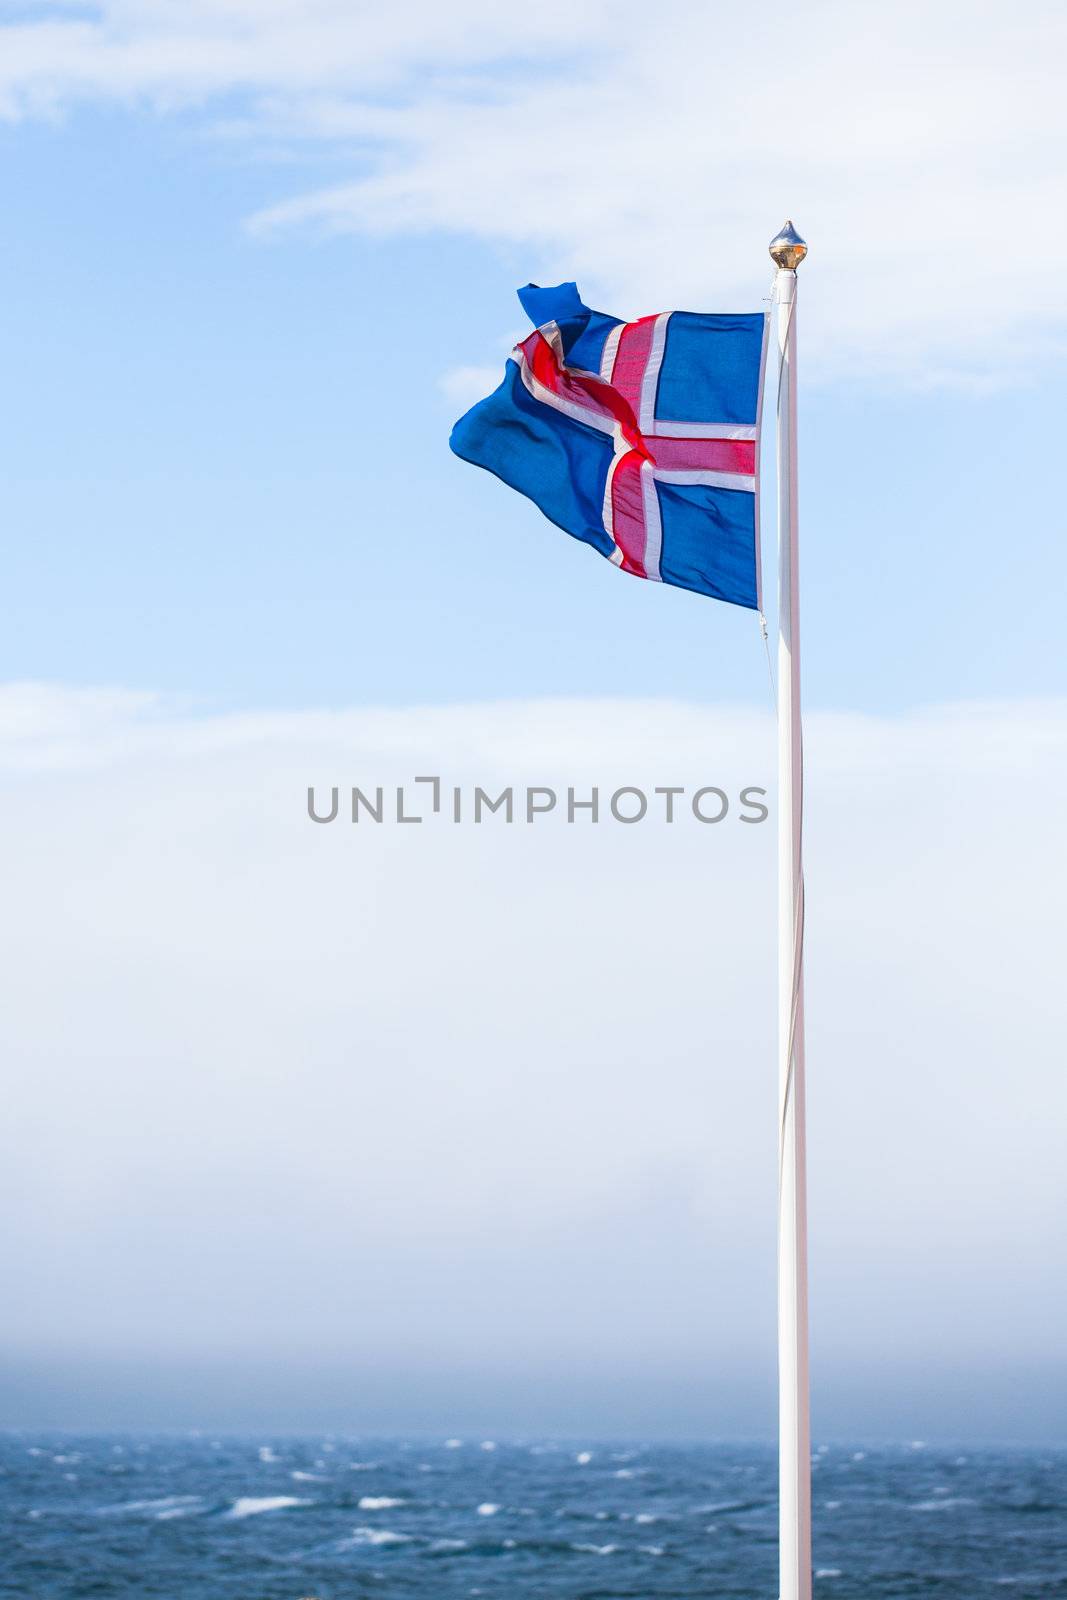 Icelandic Flag flying in summer seen against blue sky